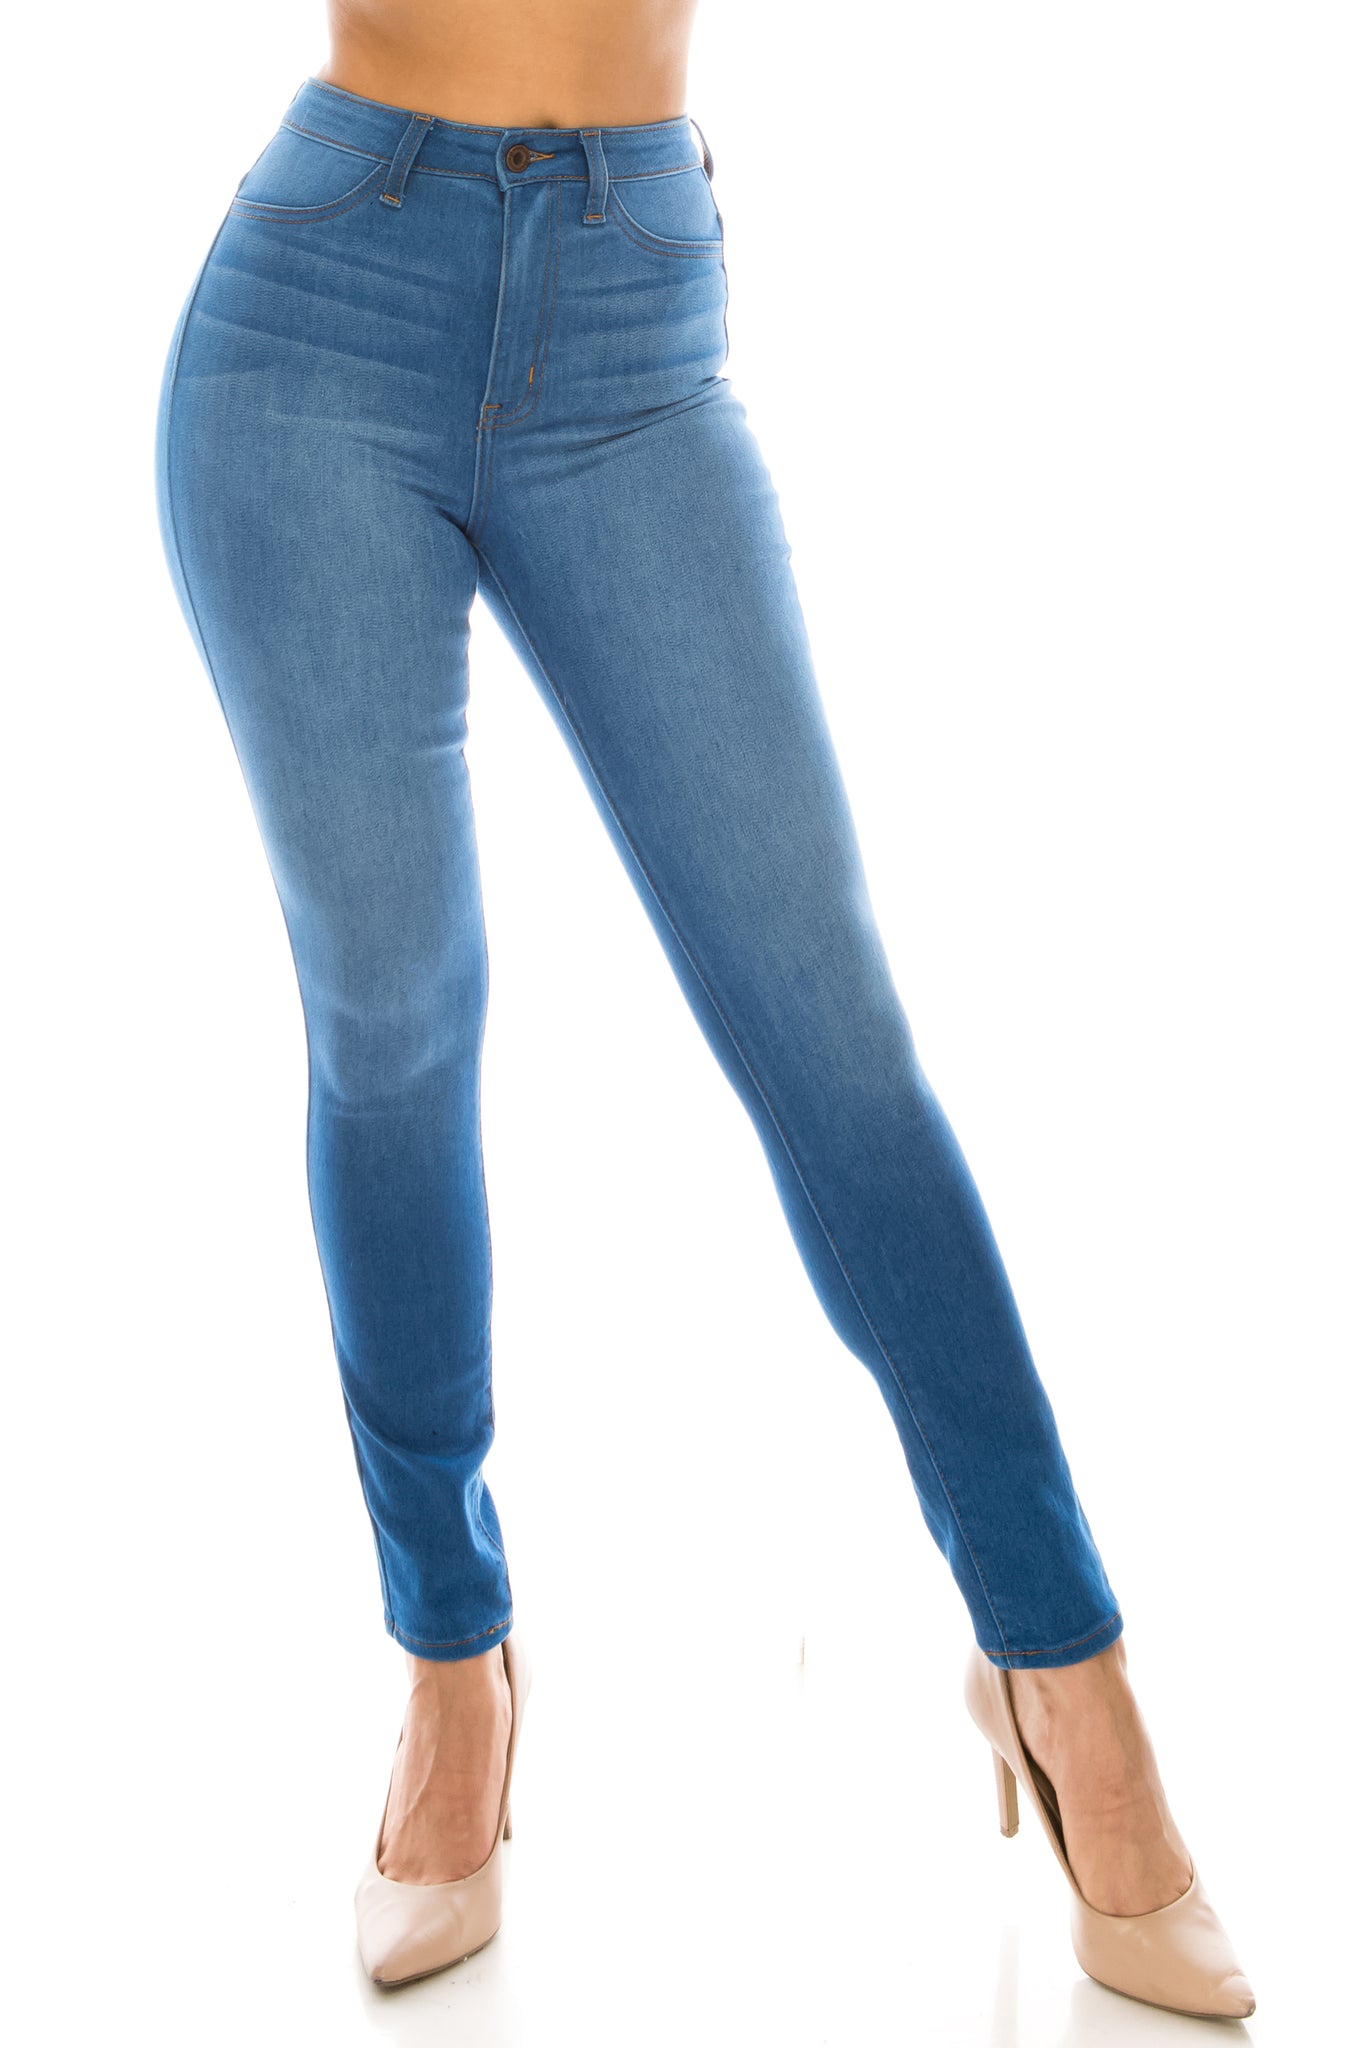  Aphrodite - Jeans de cintura alta para mujer